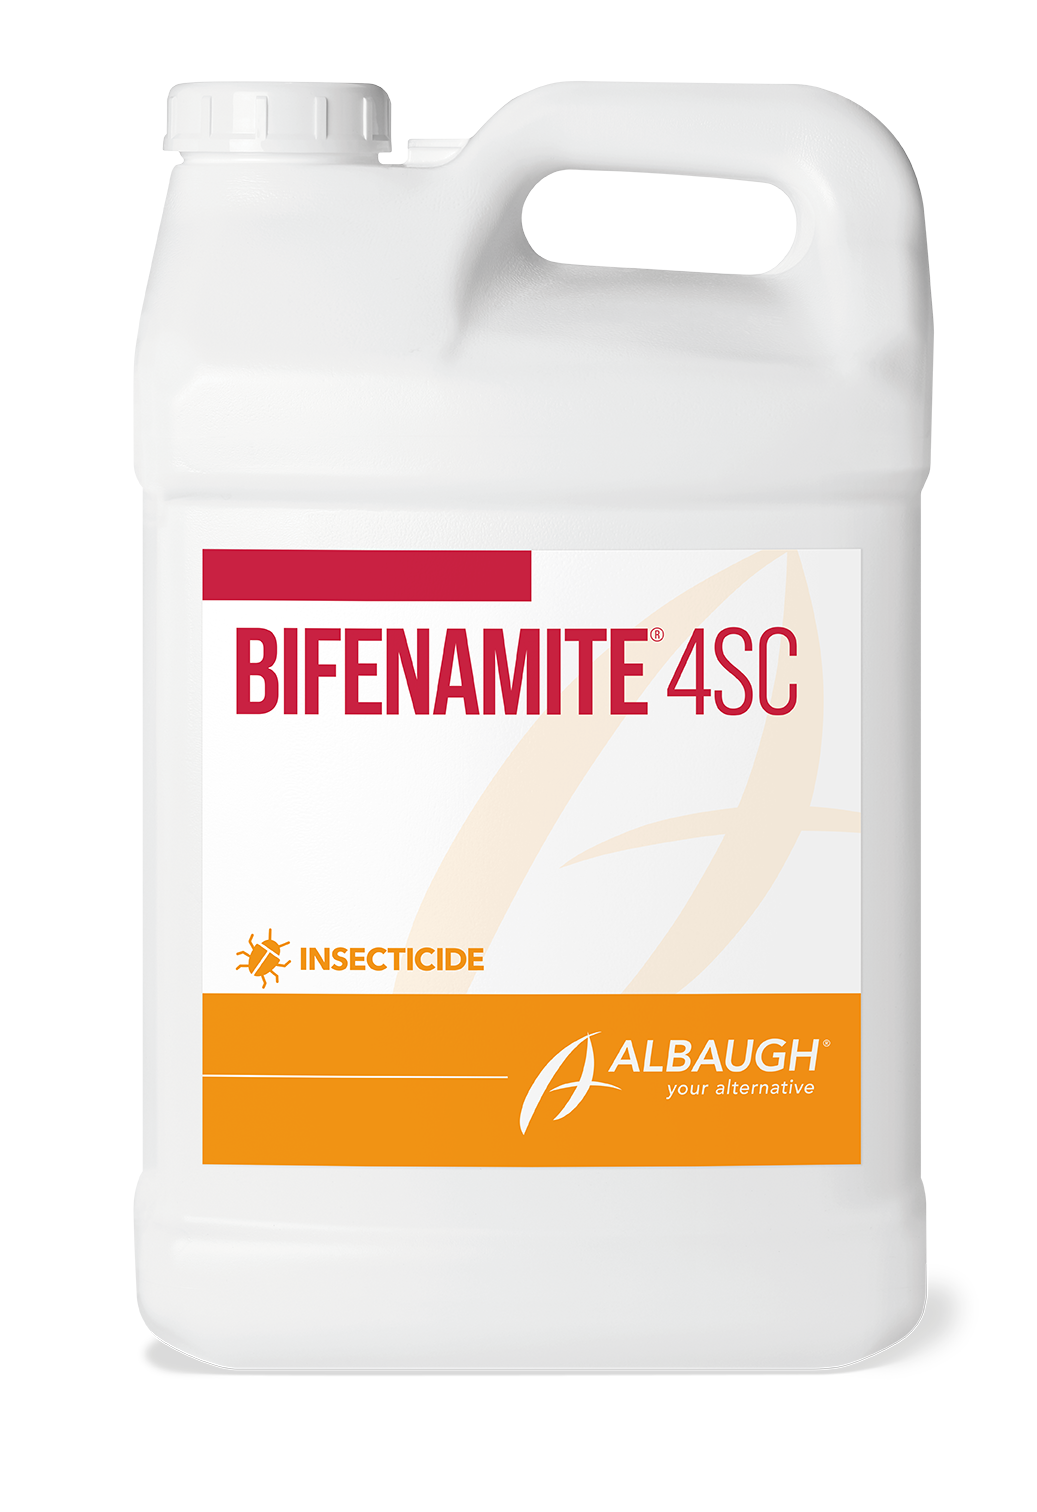 Bifenamite® 4SC